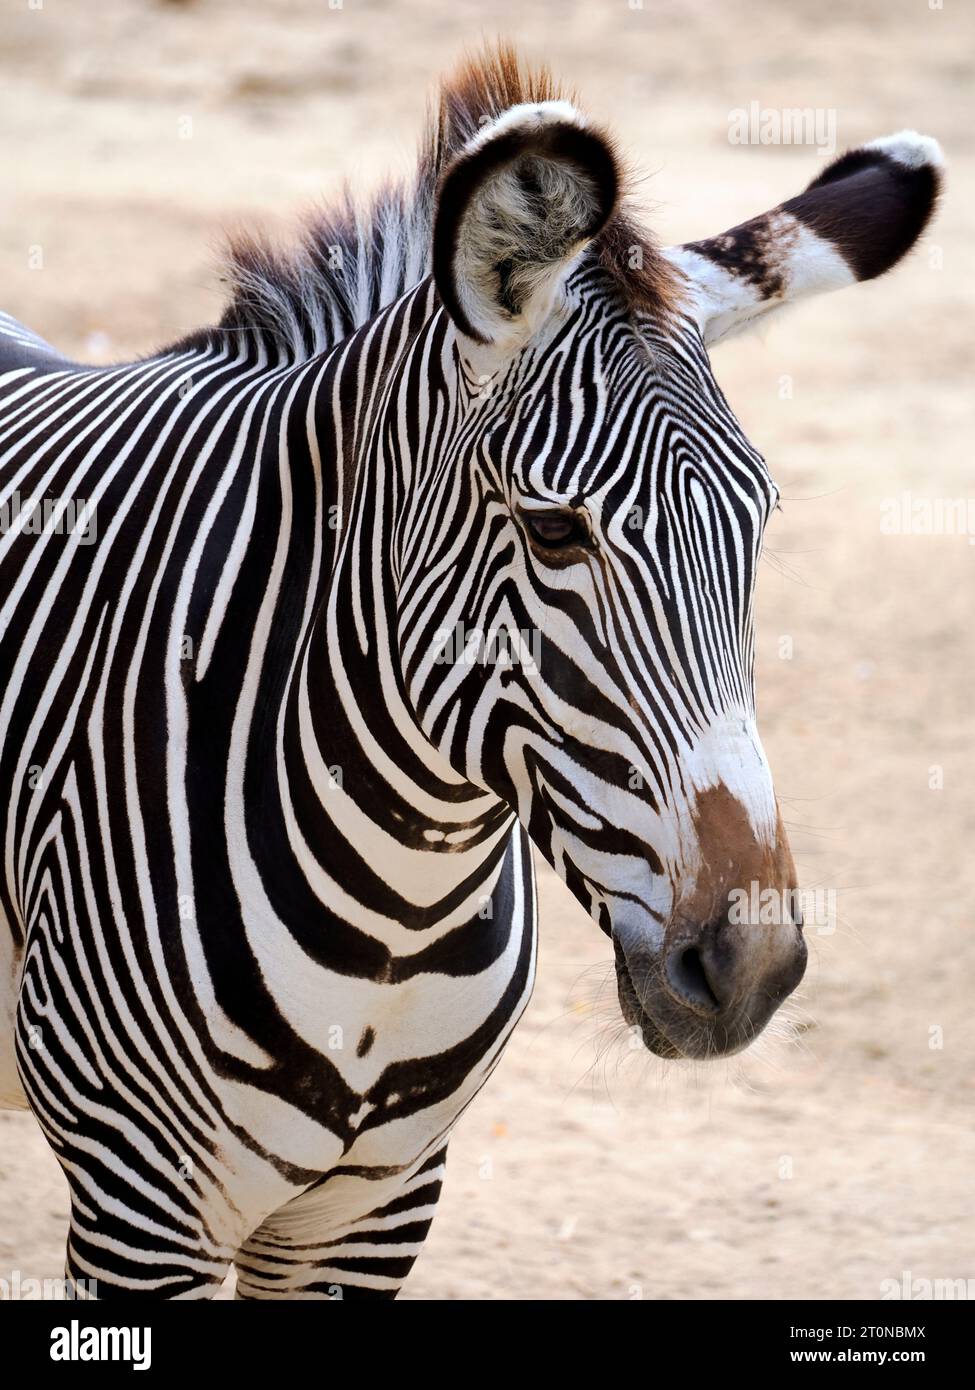 Porträt des Zebras von Grevy oder Kaiserzebras (Equus grevyi) ist das größte lebende WildEquid und die am stärksten bedrohte der drei Zebraarten Stockfoto